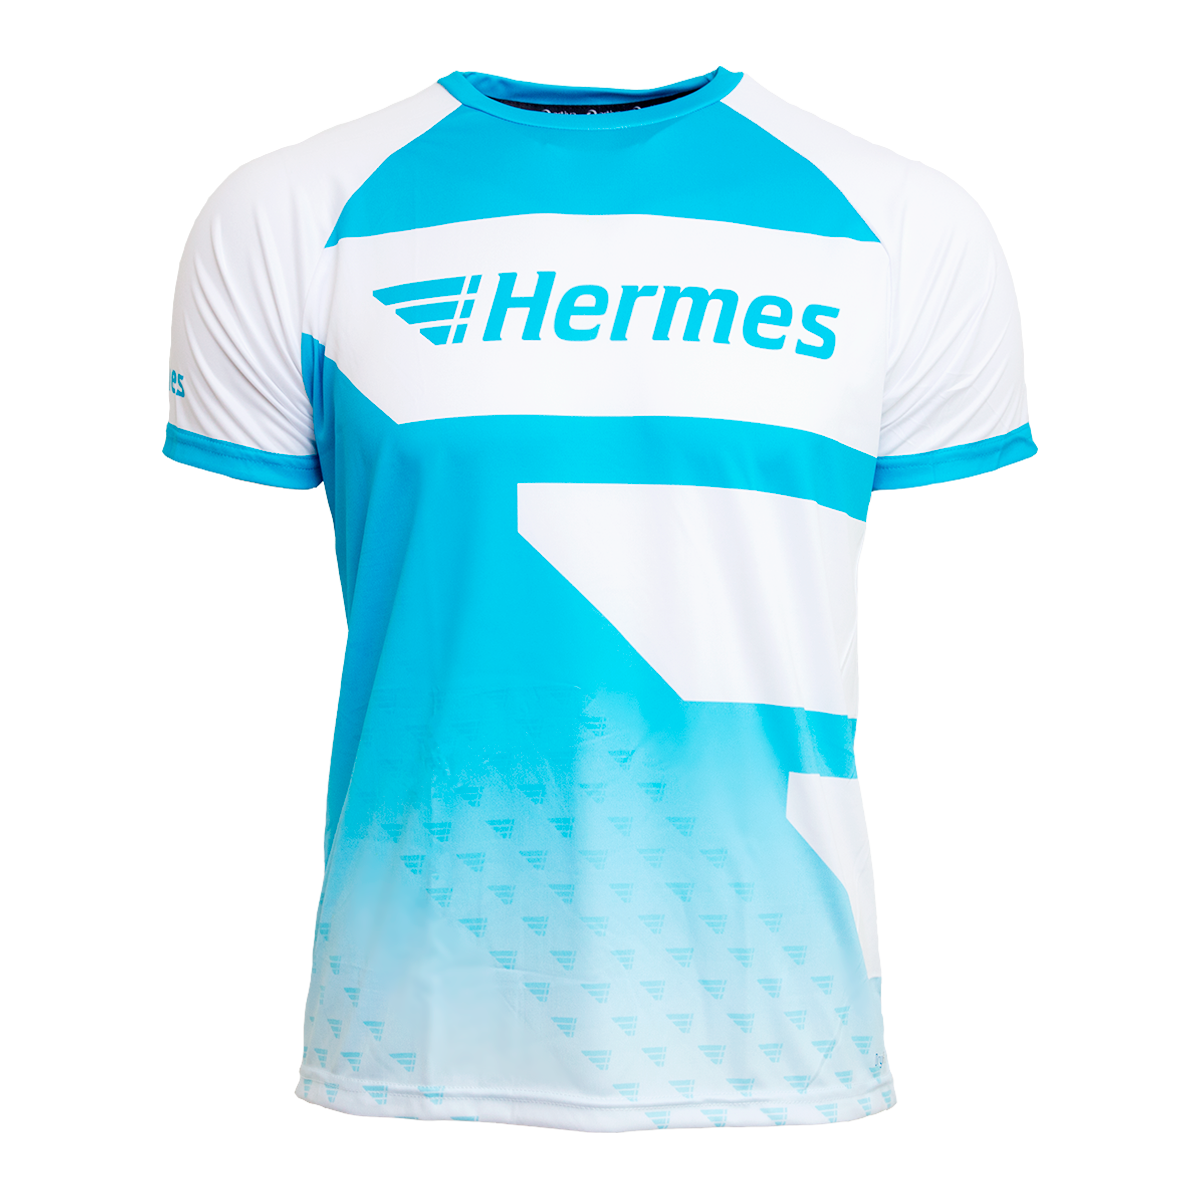 Hermes_runningshirt_front